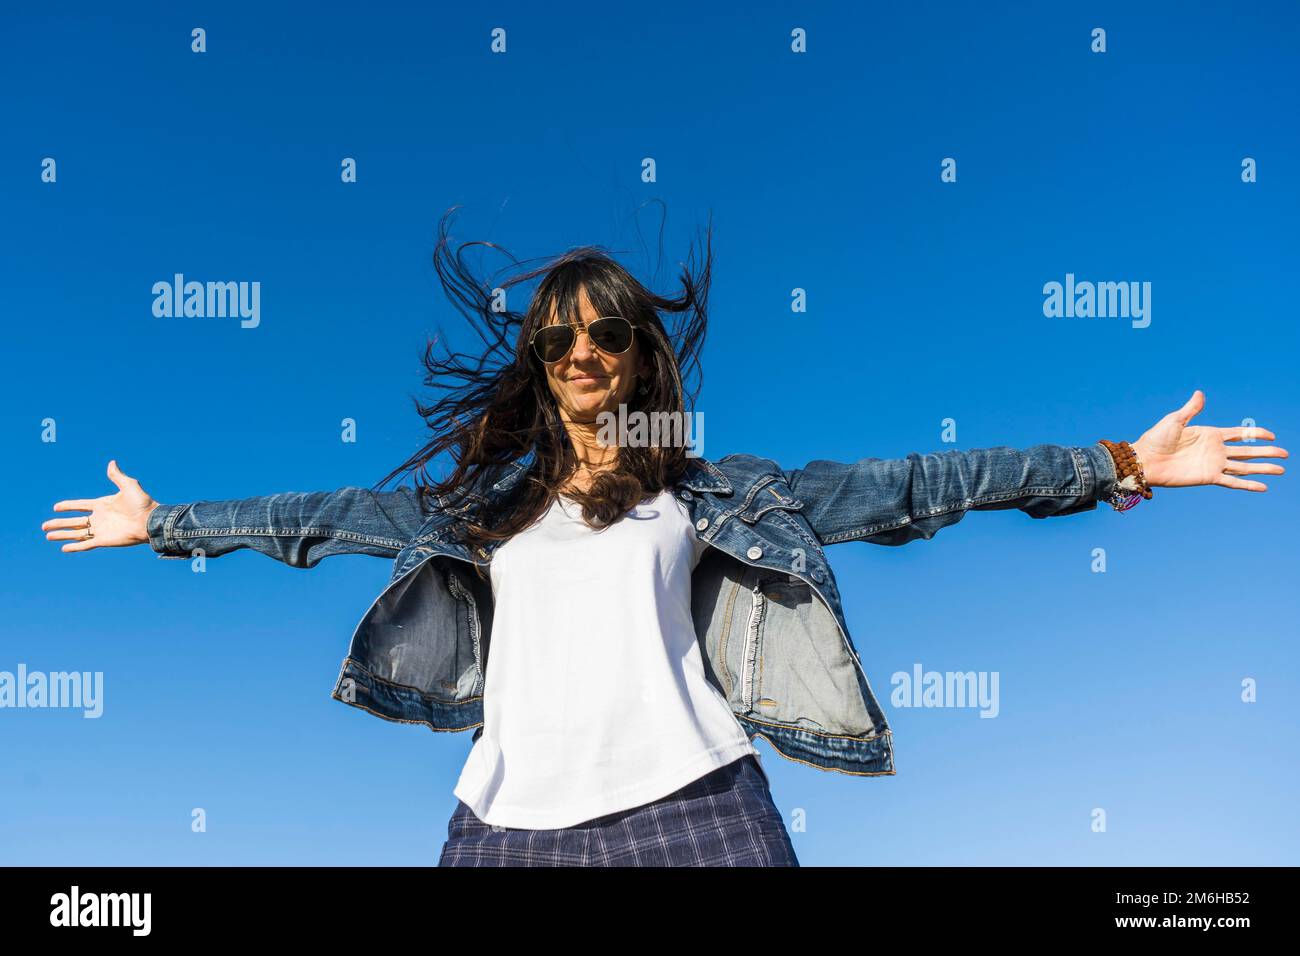 Blick aus dem niedrigen Winkel auf eine Frau, die sich ähnelt, mit offenen Armen im Freien. Blauer Himmelshintergrund Stockfoto